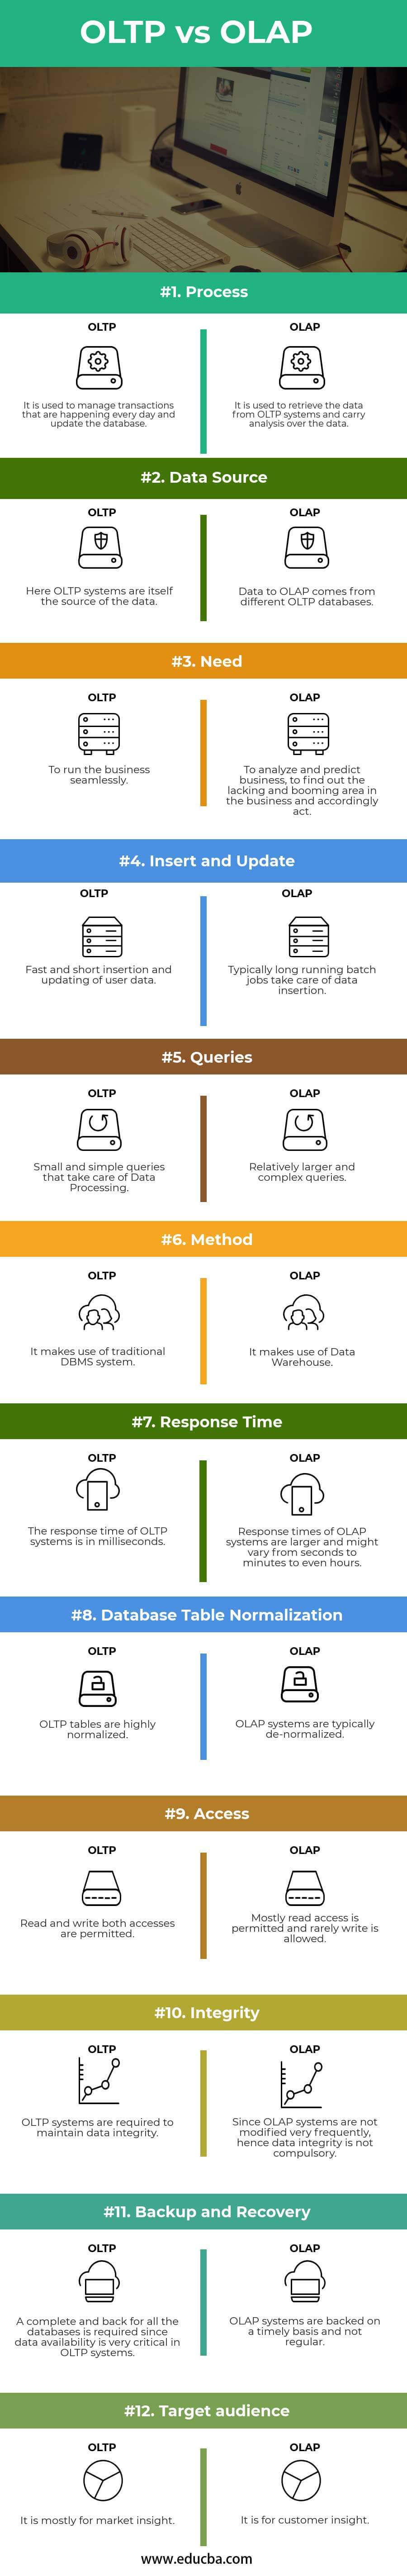 OLTP-vs-OLAP-info